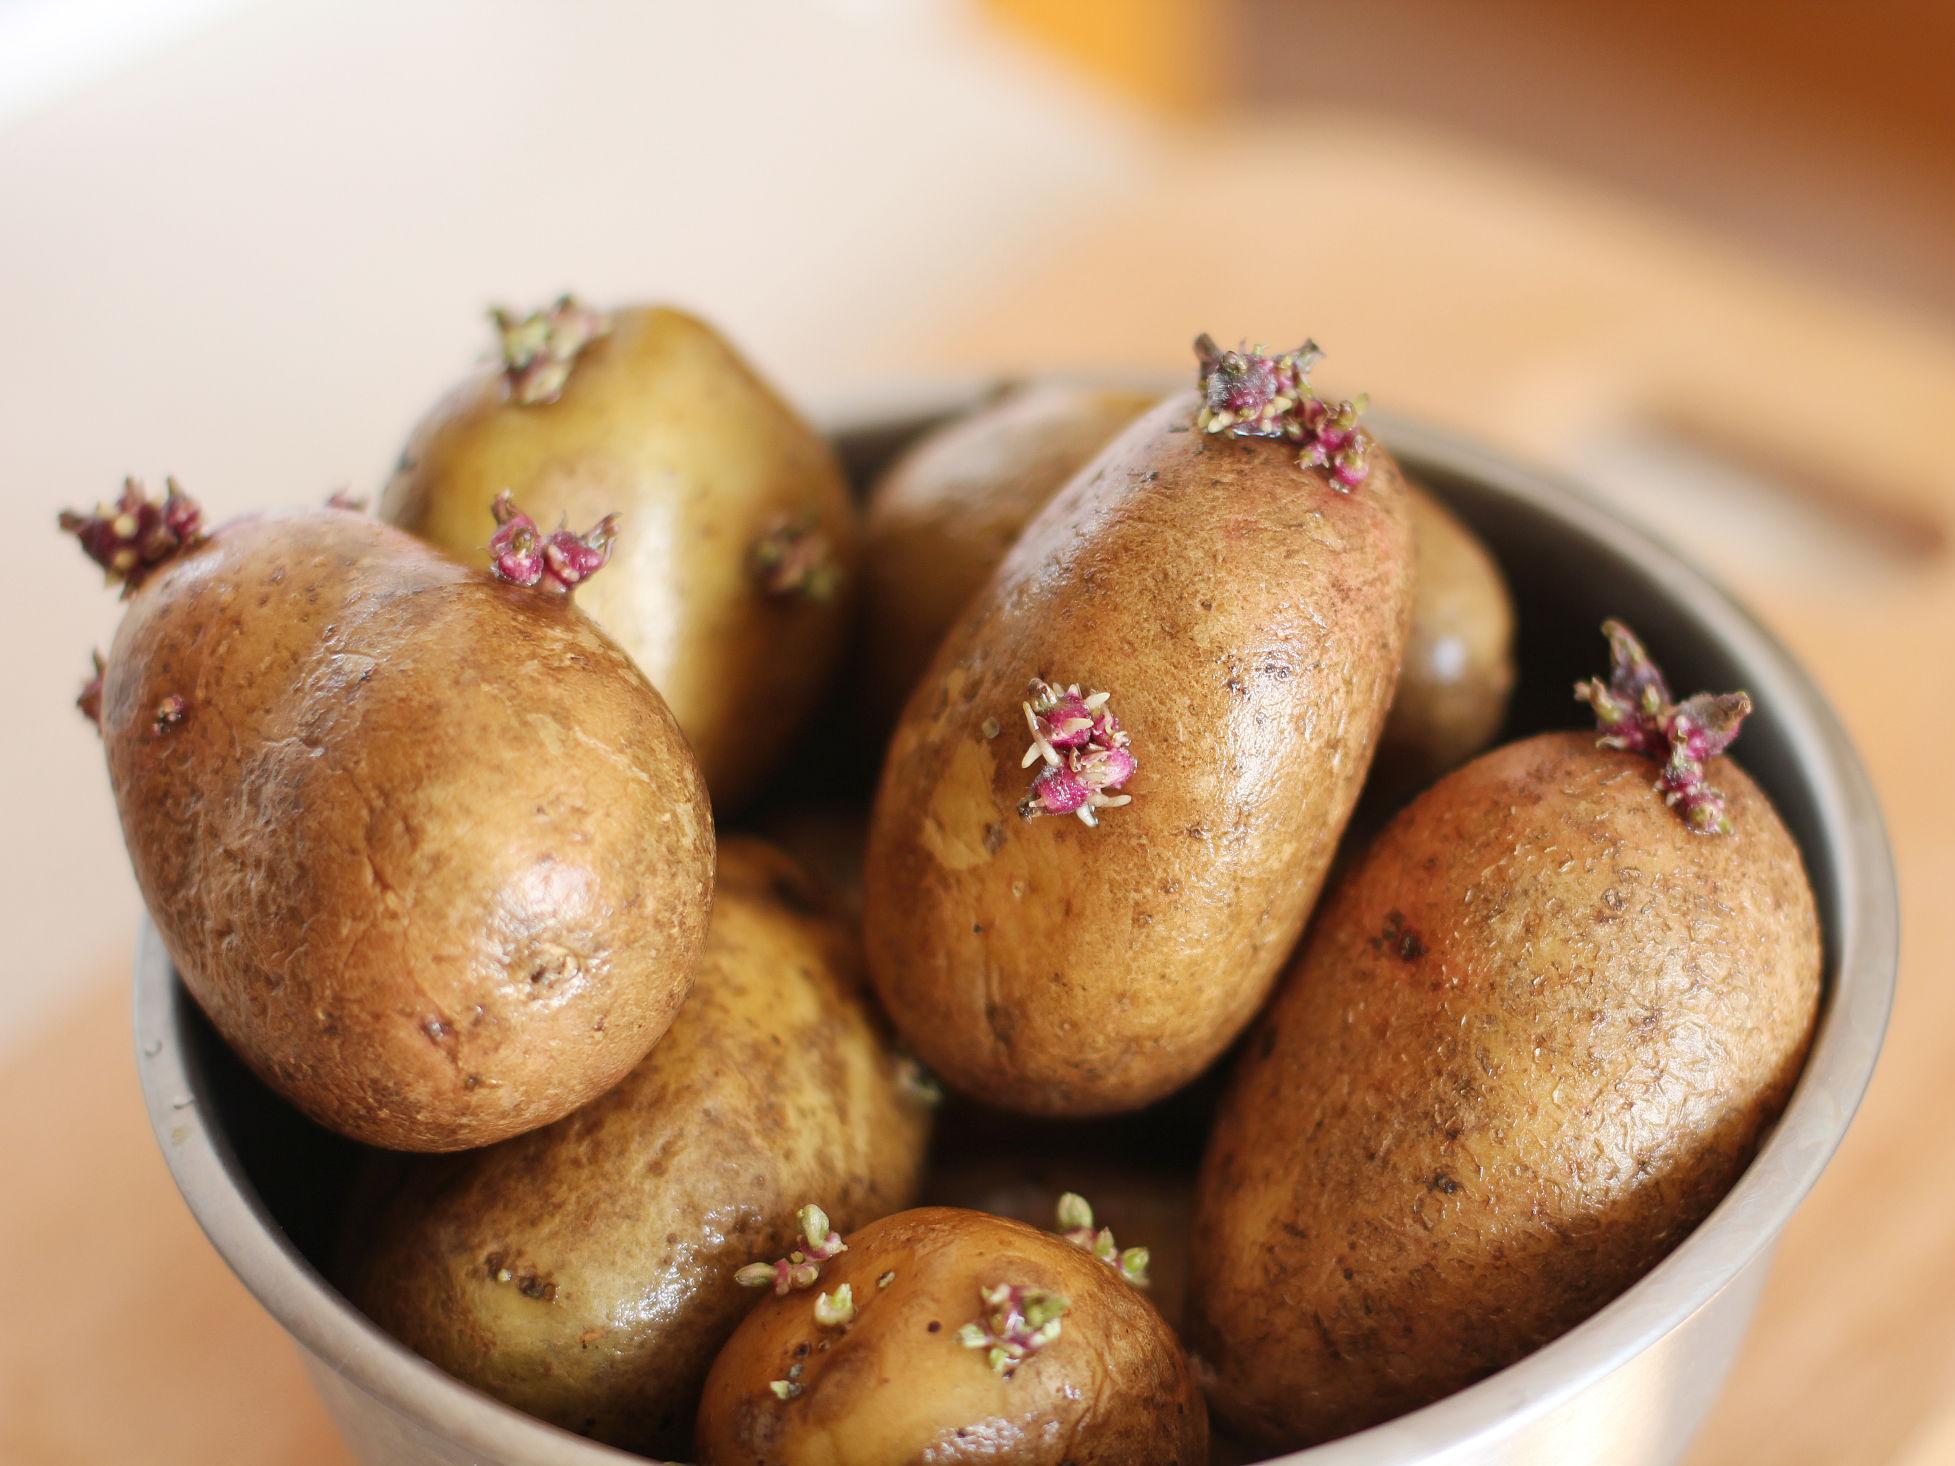 SPIRER: Ikke spis spirene på poteter, da disse inneholder glykoalkaloider. Foto: Shutterstock